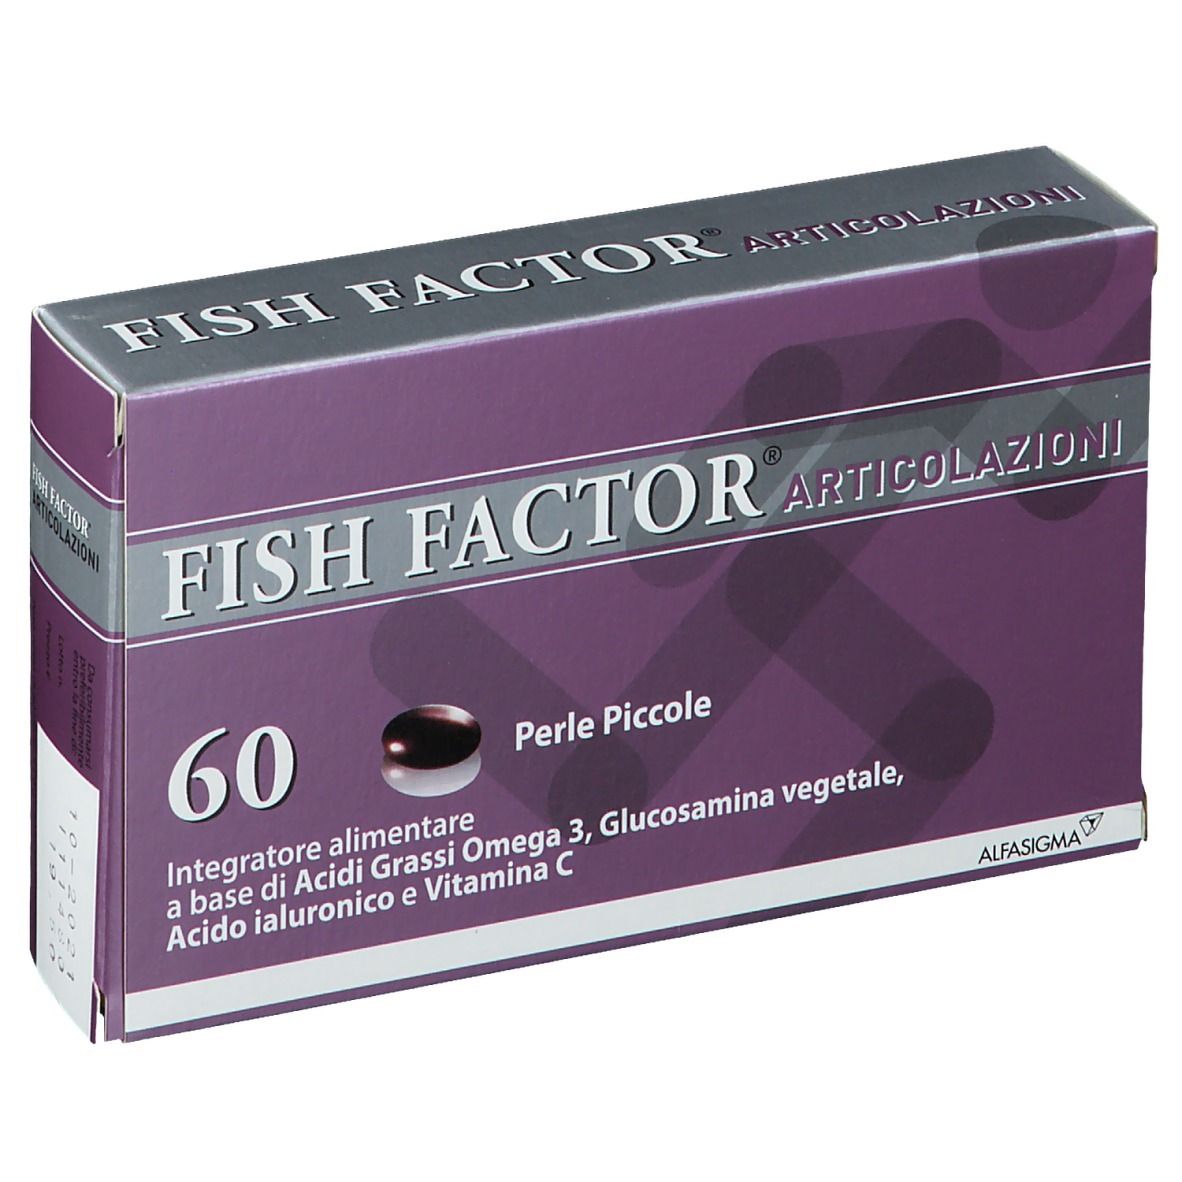 Fish Factor® Articolazioni